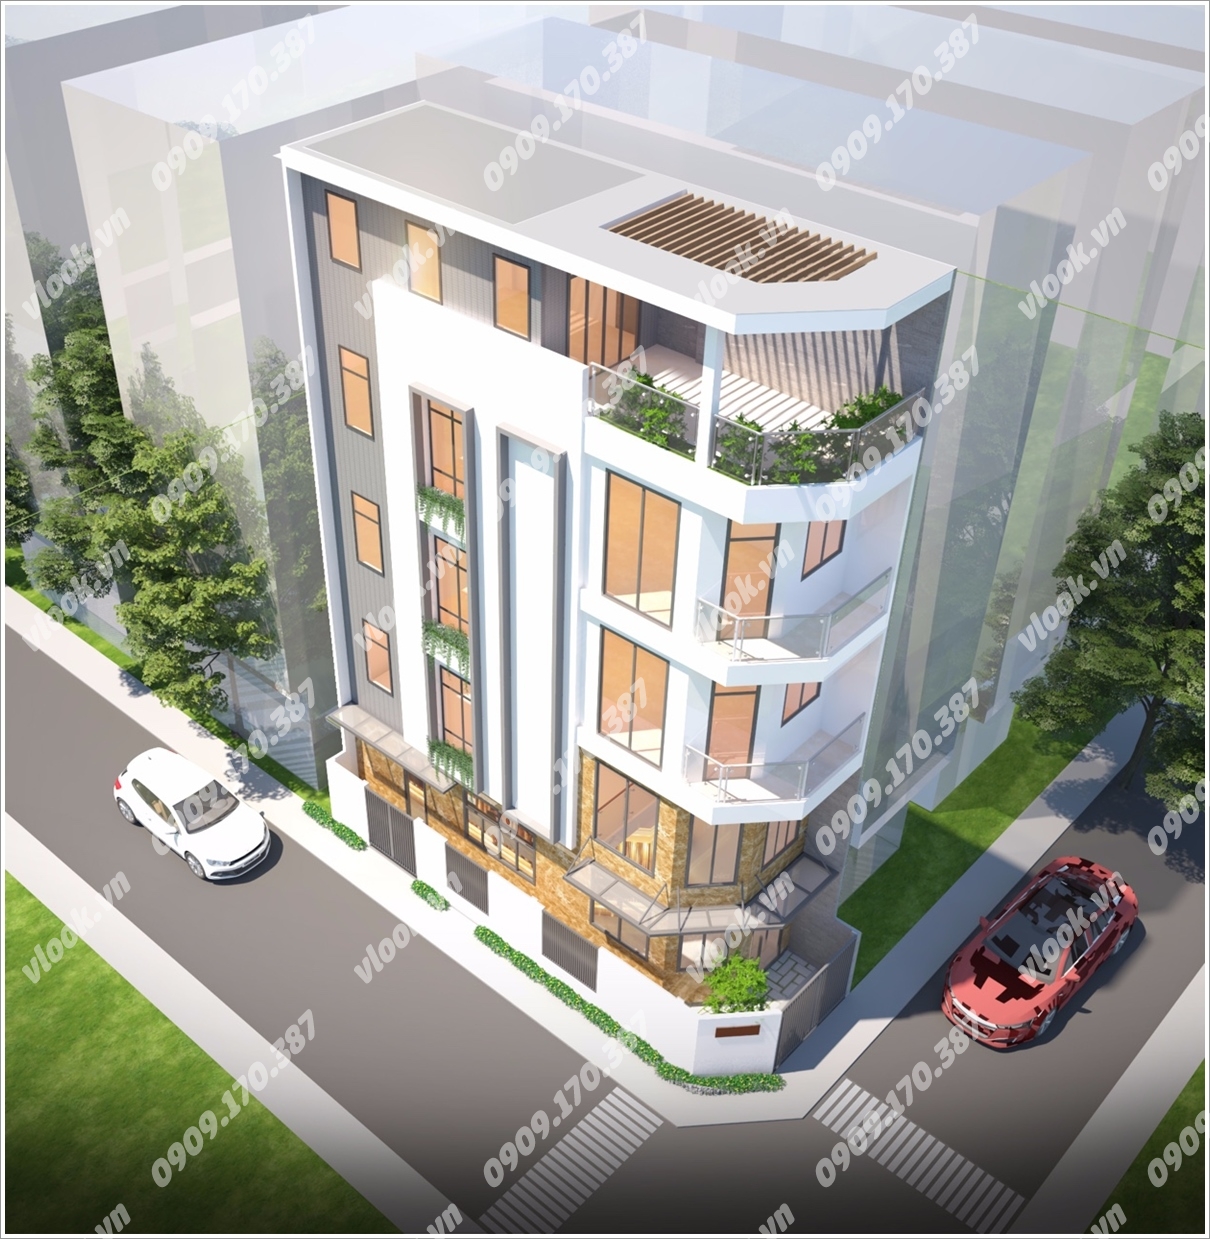 Cao ốc cho thuê văn phòng A&H Building, Nơ Trang Long, Quận Bình Thạnh - vlook.vn